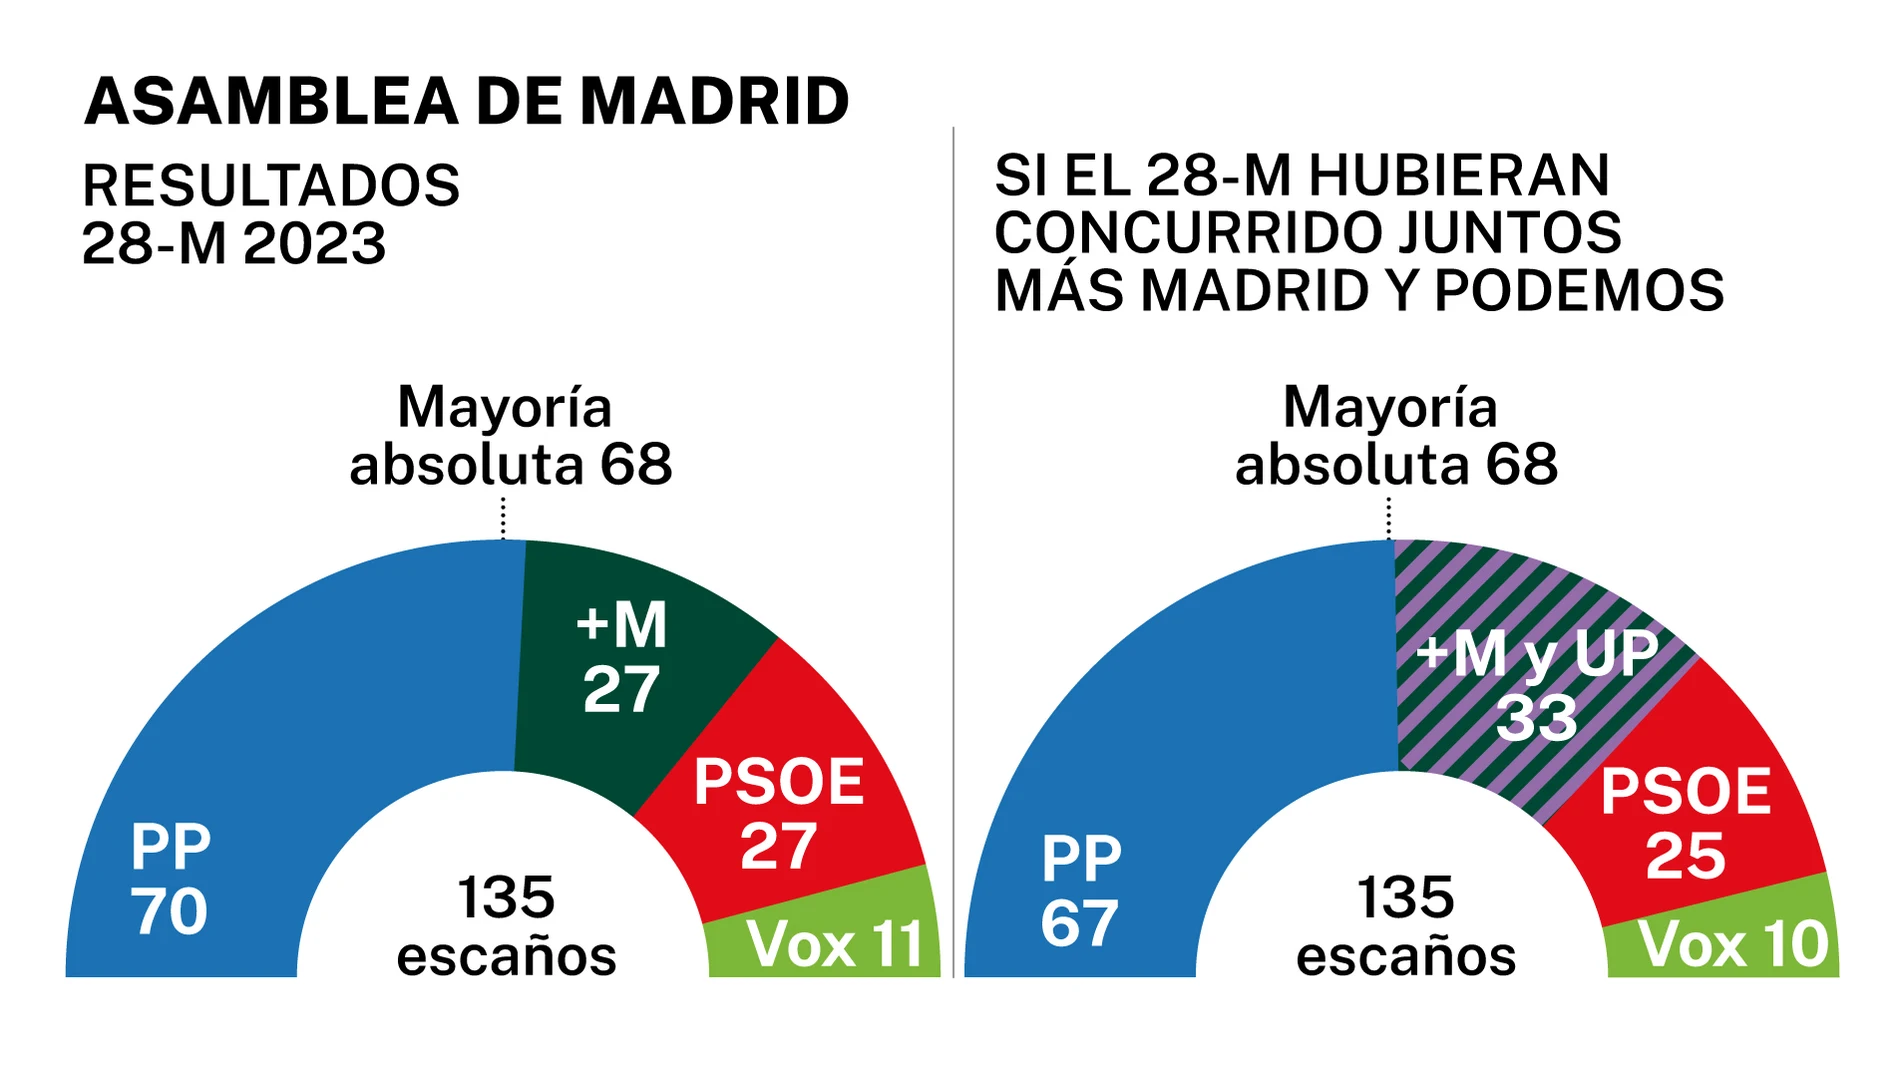 Asamblea de Madrid: Resultados 28-M y Resultados si Podemos y Más Madrid hubieran concurrido juntos